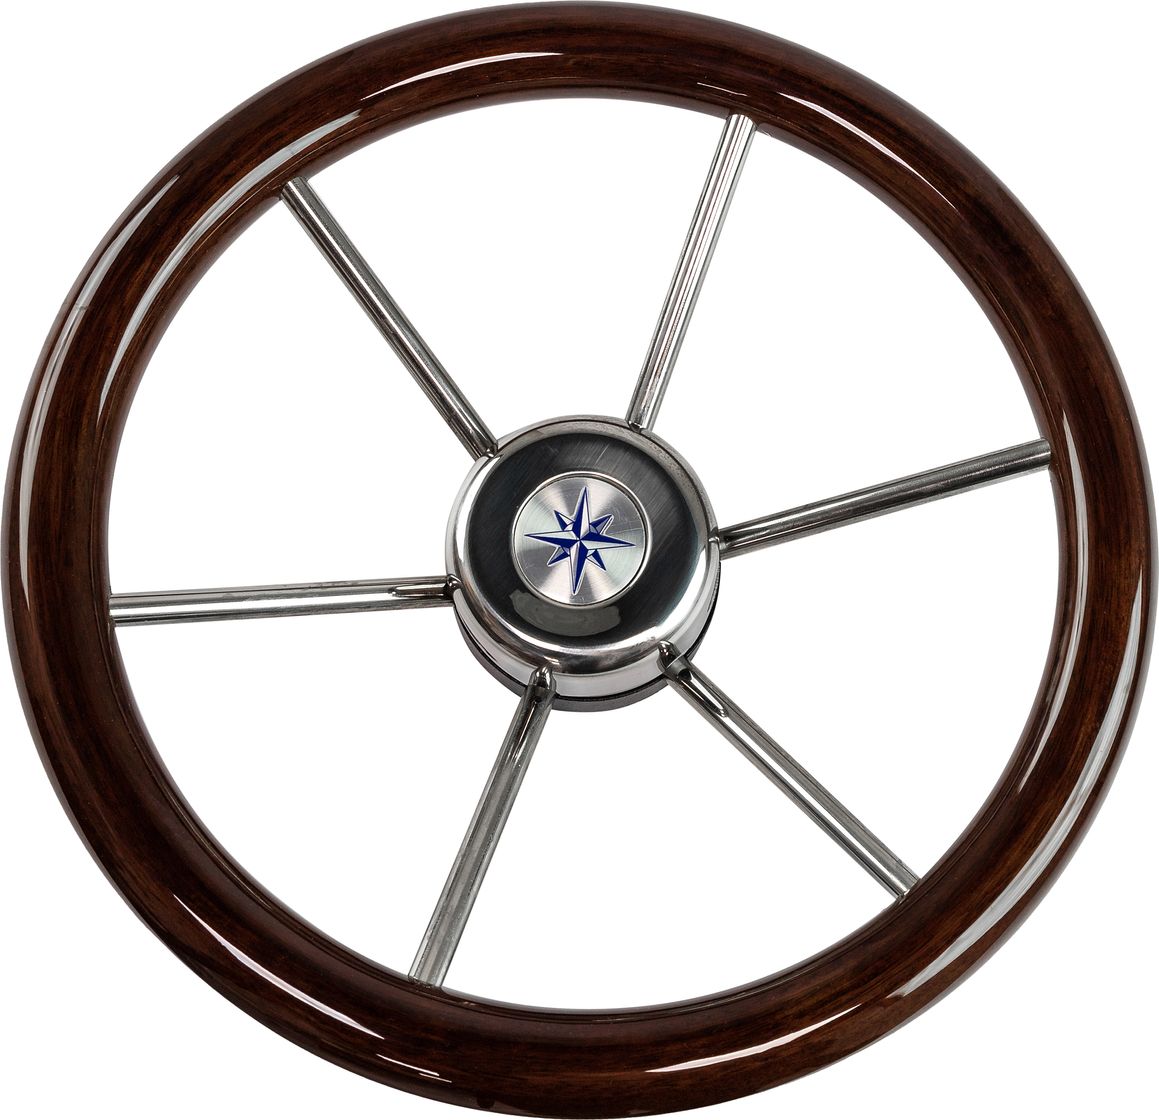 Рулевое колесо LEADER WOOD деревянный обод серебряные спицы д. 340 мм VN7340-33 рулевое колесо leader tanegum обод серебряные спицы д 360 мм vn7360 01